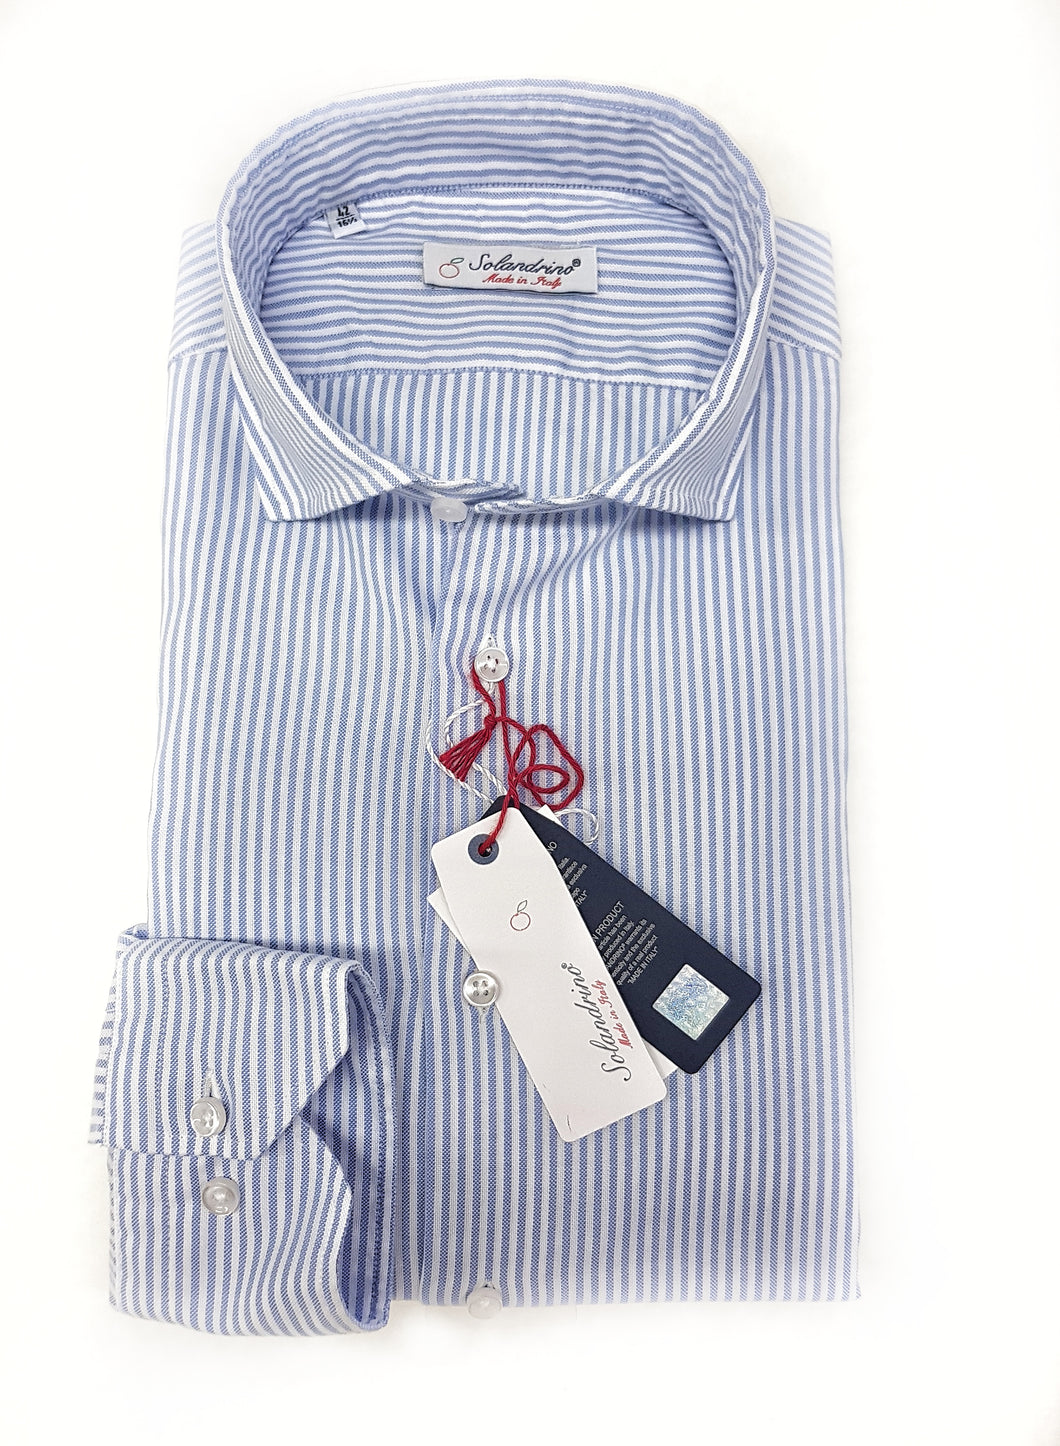 Camicia uomo rigata azzurra puro cotone panama made in italy stripe blue Panama